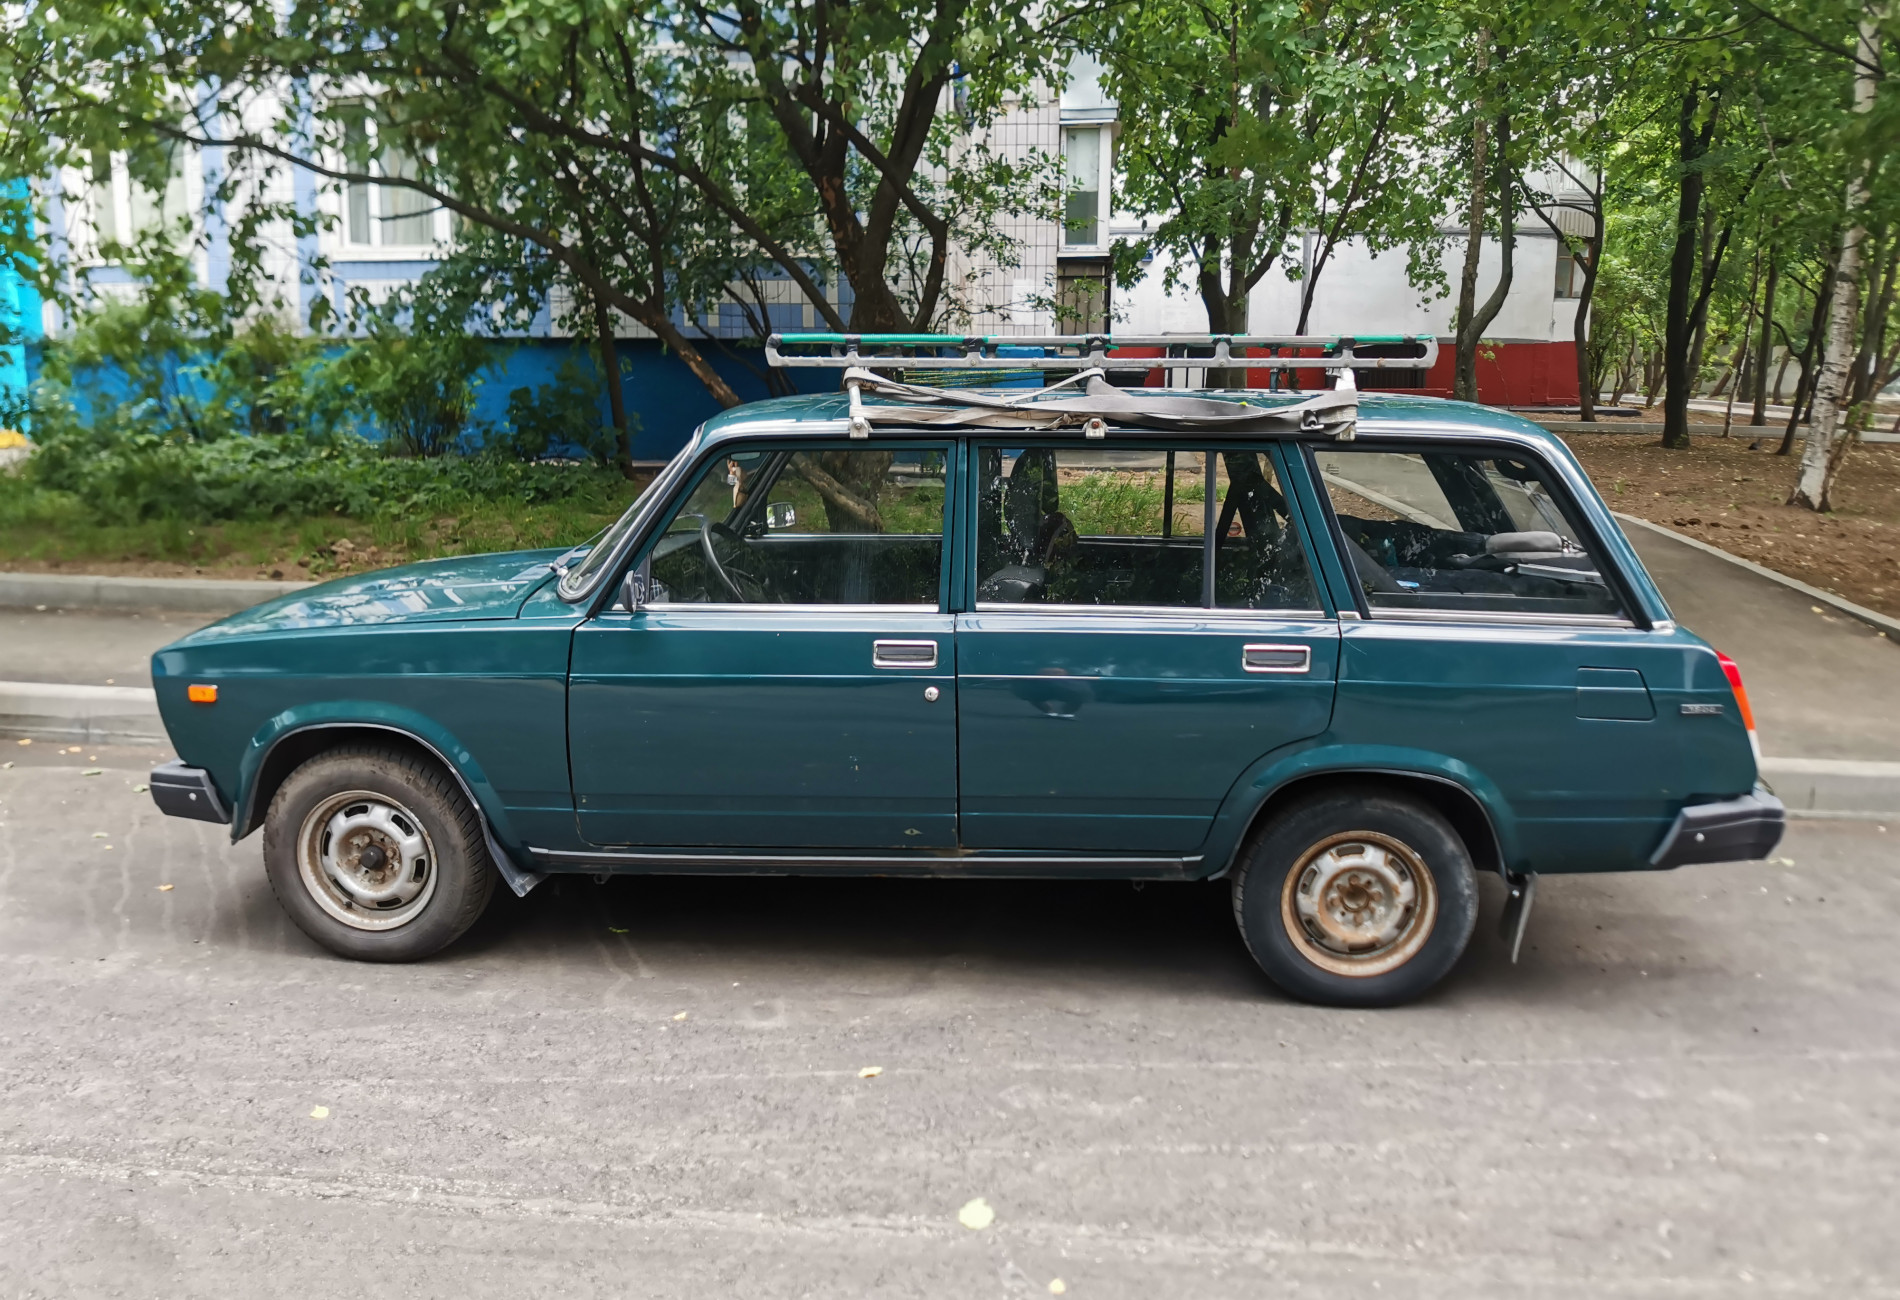 Аренда lada 2104 эконом класса 2006 года в городе Москва от 1080 руб./сутки, передний привод, двигатель: бензин, объем 1451 литр, ОСАГО (Впишу в полис), без водителя, недорого, вид 2 - RentRide